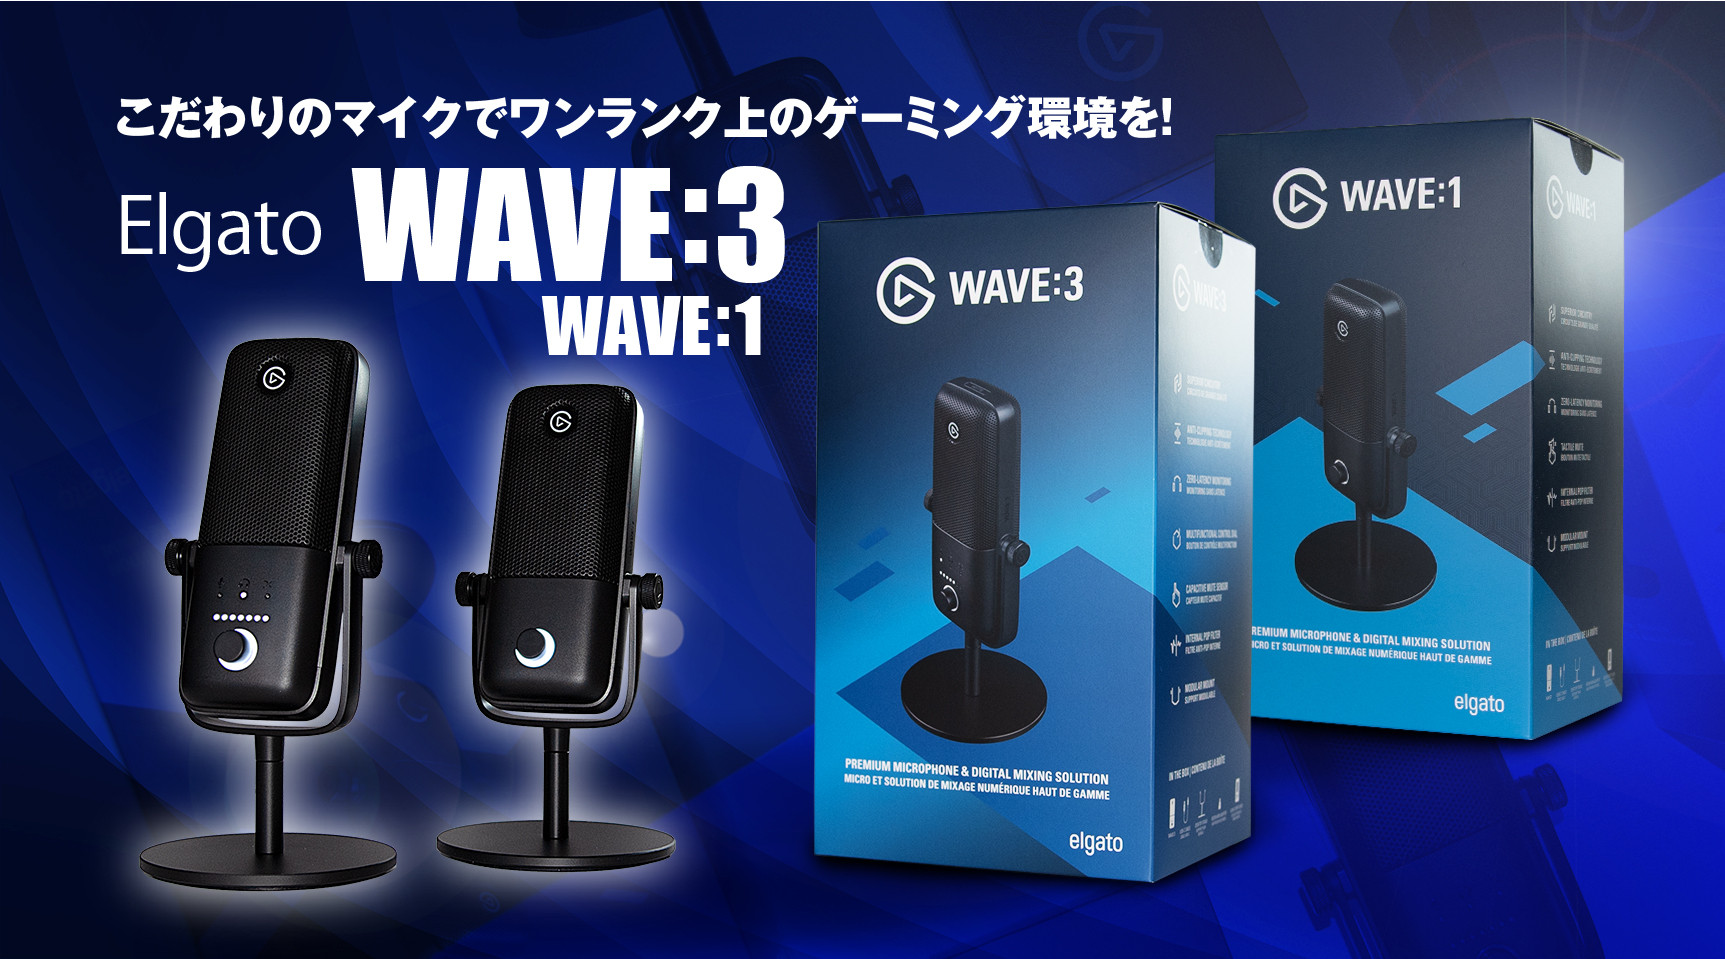 3000円 NEW売り切れる前に☆ Elgato Wave:3 コンデンサー USBマイク